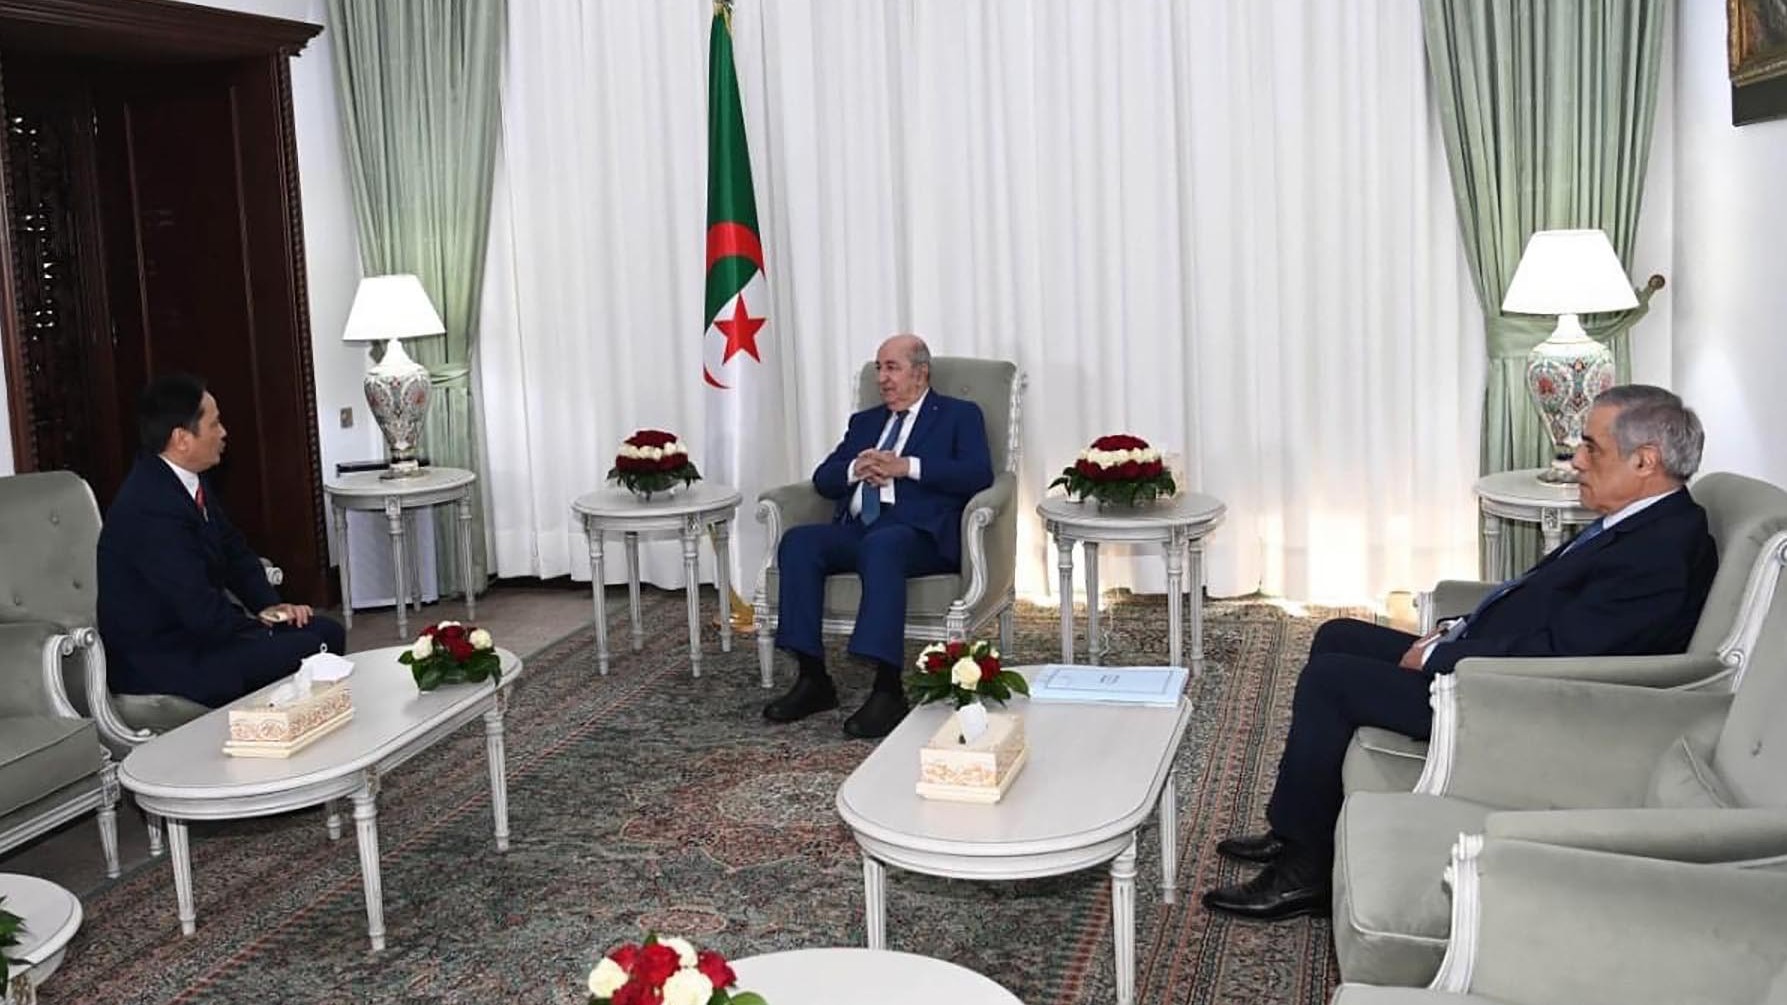 Đại sứ Nguyễn Thành Vinh chào từ biệt Tổng thống Algeria nhân dịp kết thúc nhiệm kỳ công tác